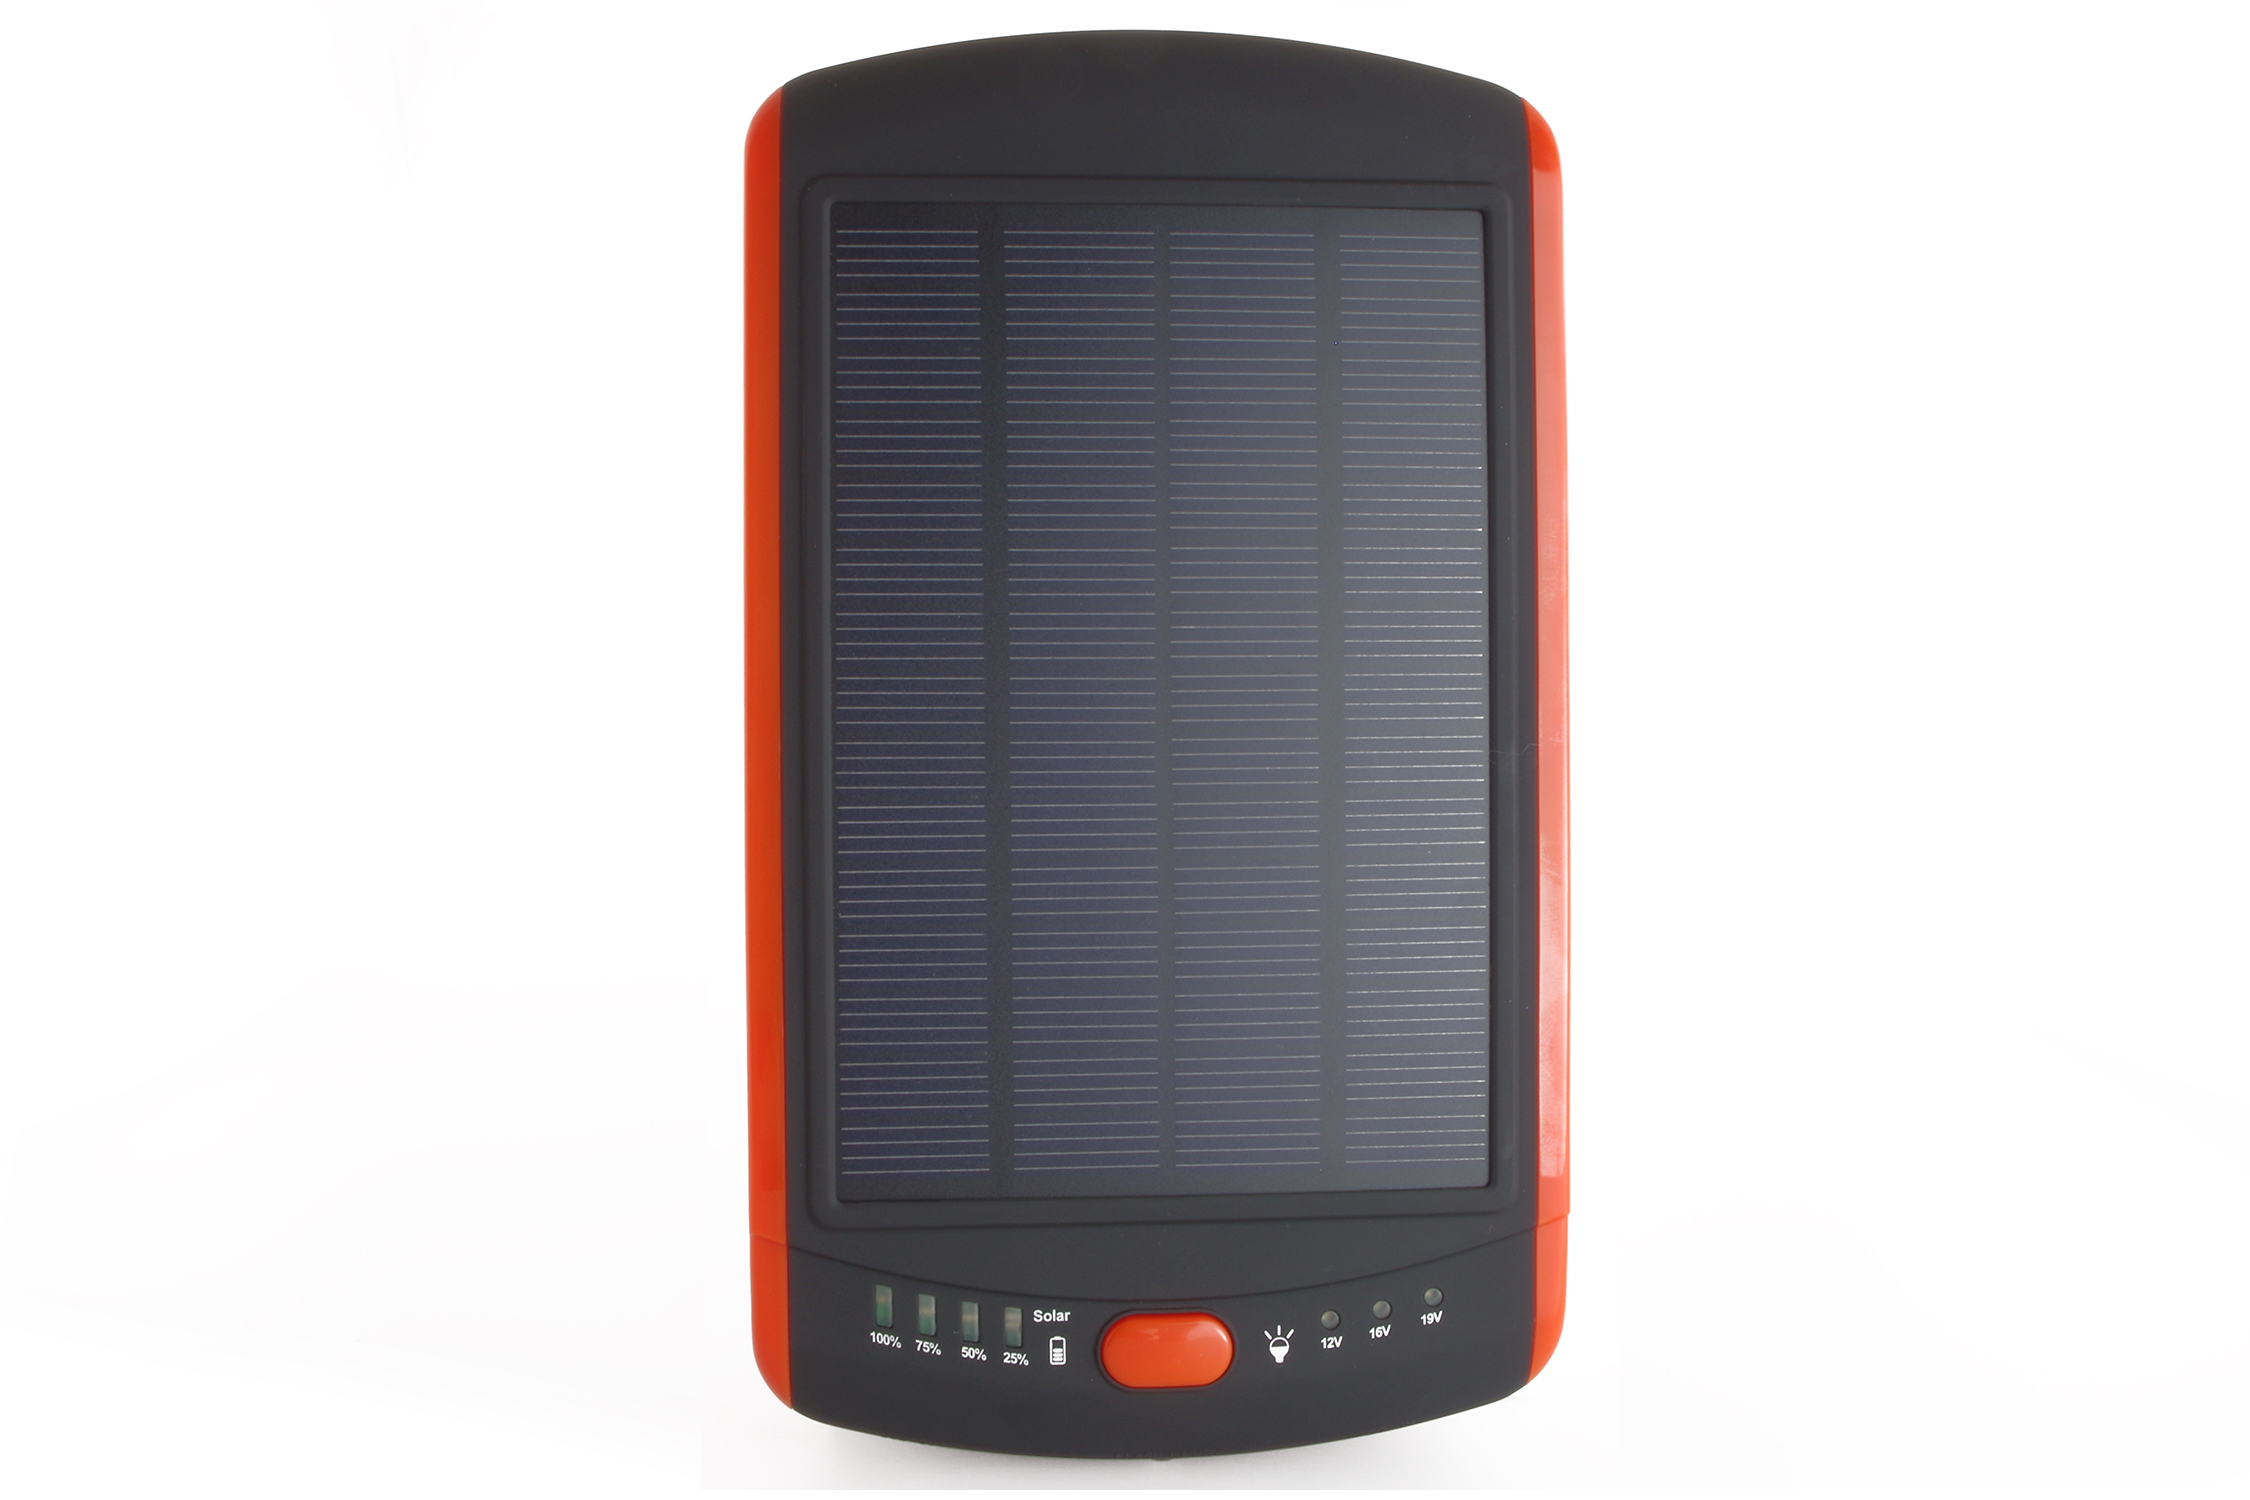 
eingebautes Solarpaneel – Sie brauchen keinen Internetanschluss, um das Powerbank zu laden
